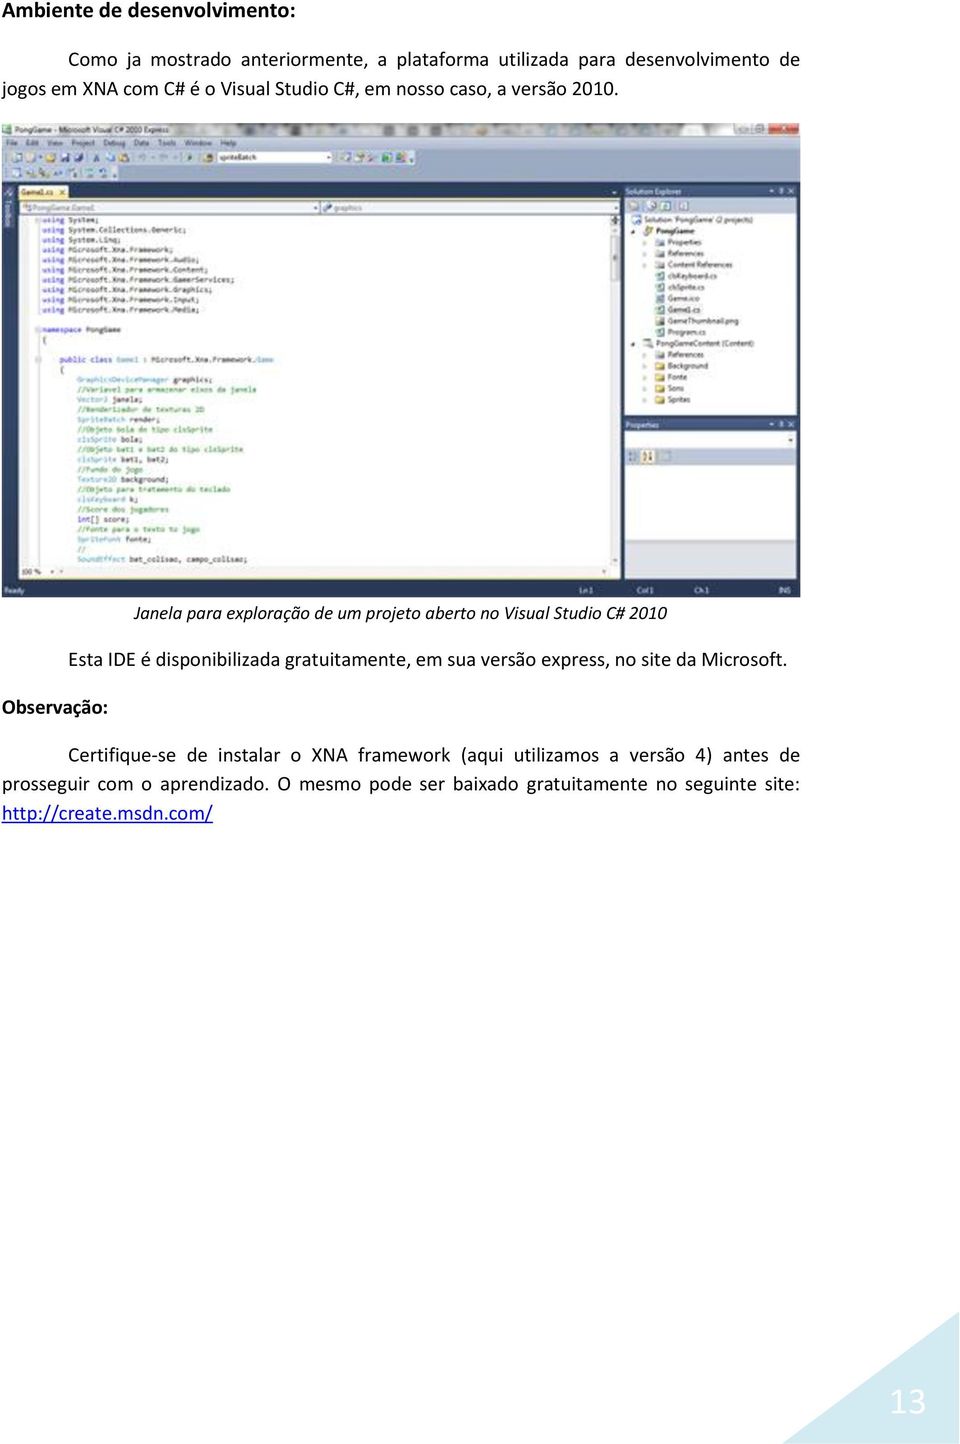 Observação: Janela para exploração de um projeto aberto no Visual Studio C# 2010 Esta IDE é disponibilizada gratuitamente, em sua